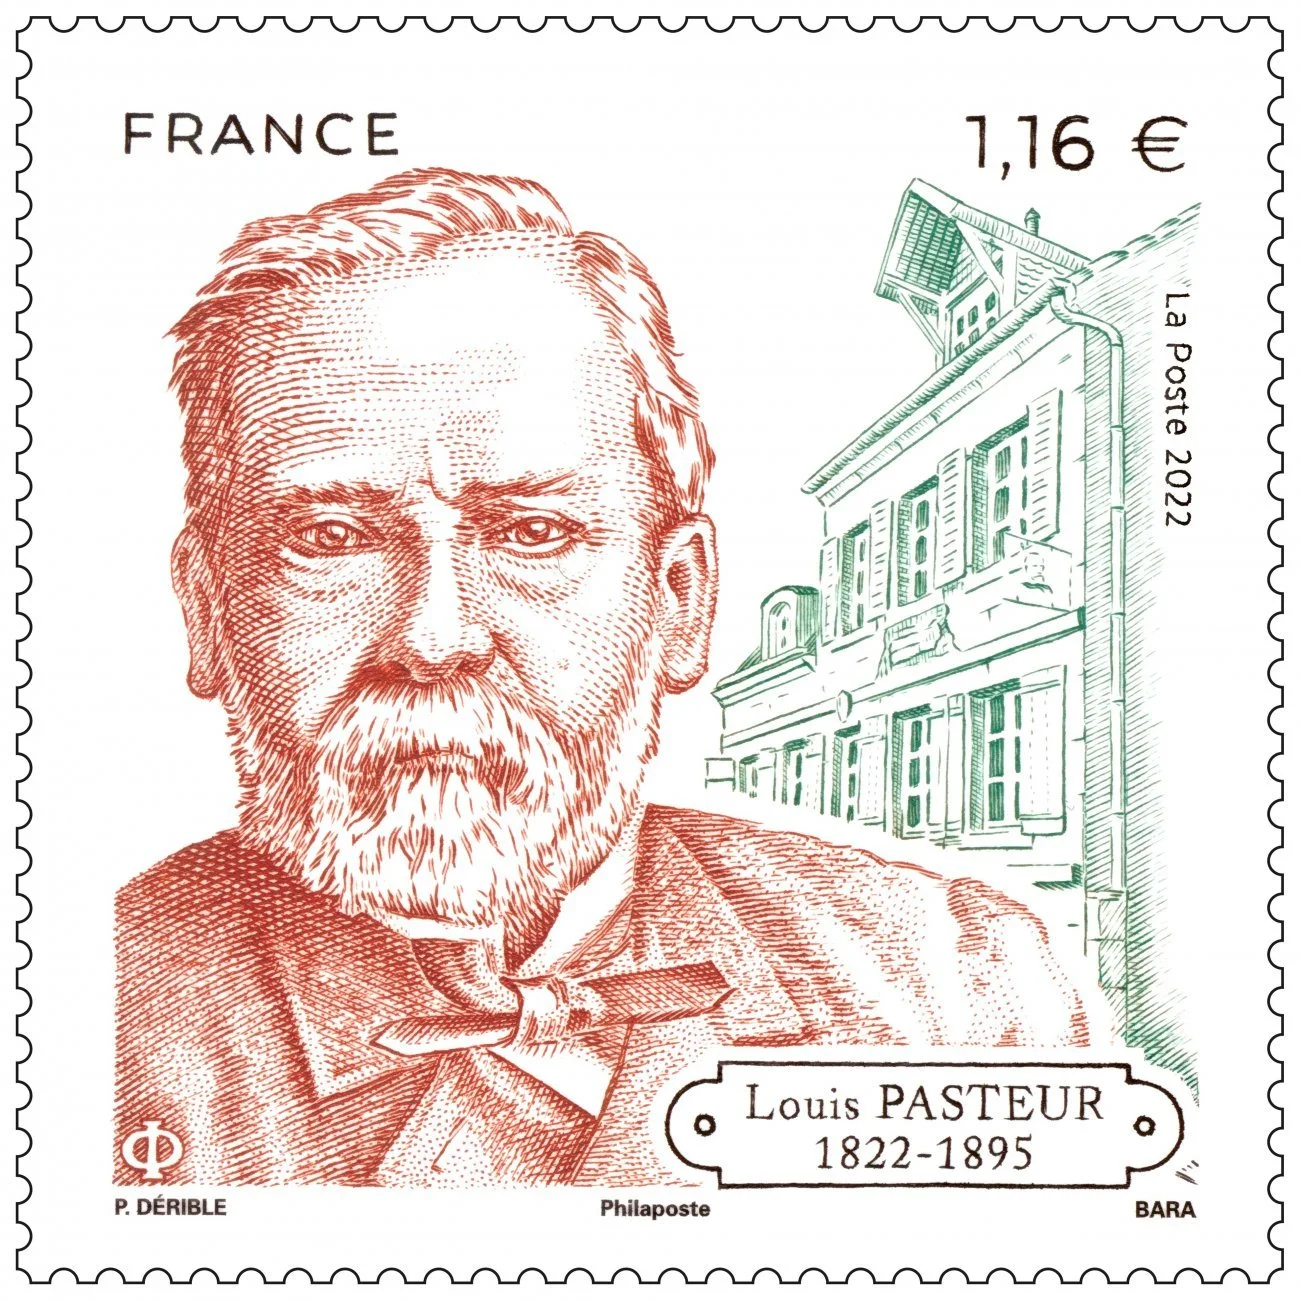 Timbre français 2022 bicentenaire naissance Louis Pasteur